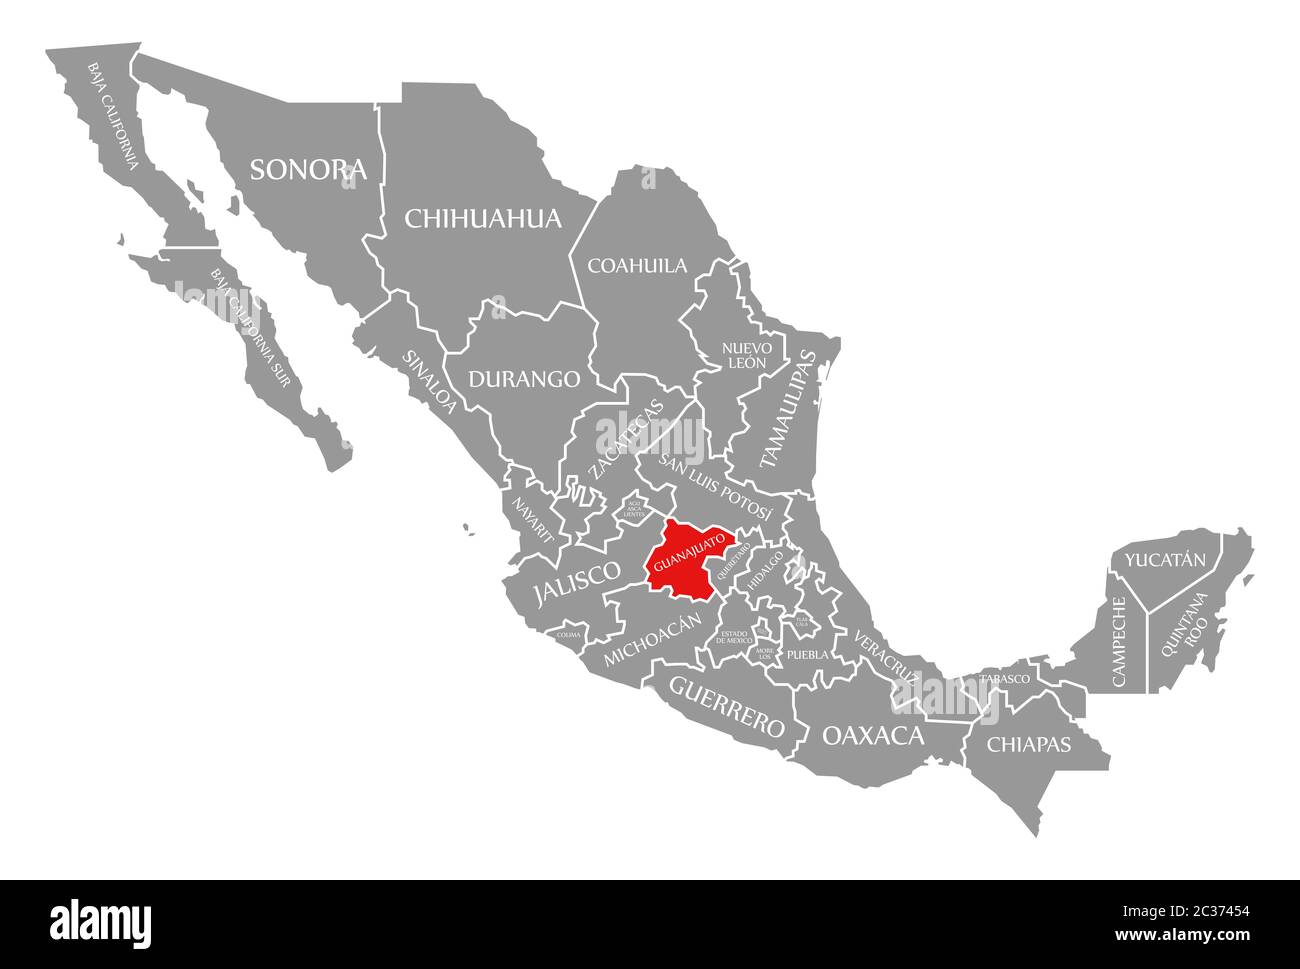 Guanajuato Resaltada En Rojo En El Mapa De Mexico 2c37454 